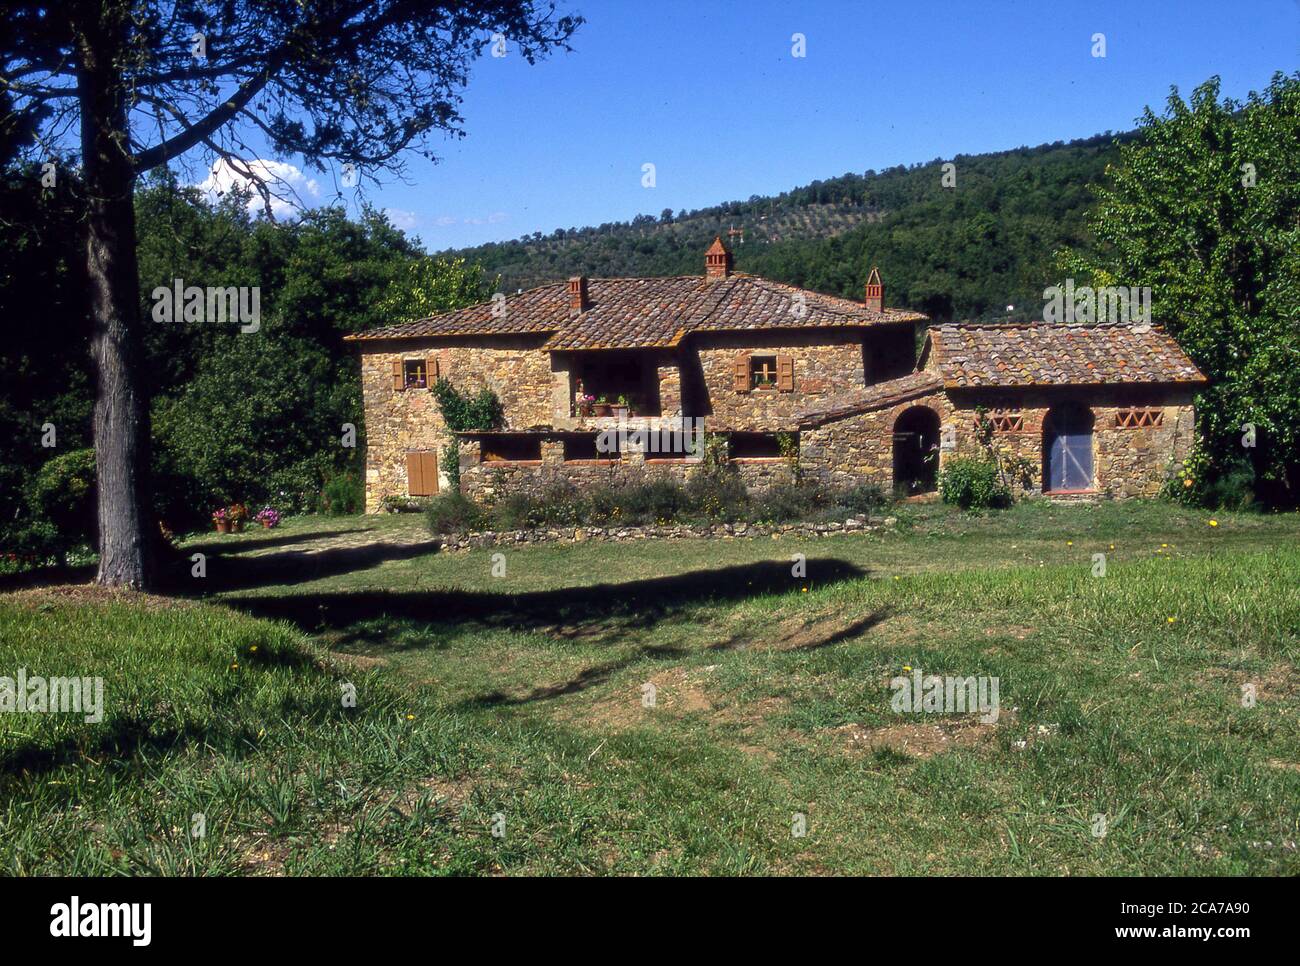 Klassisches Bauernhaus aus Stein in der toskanischen Region von Italien. Stockfoto